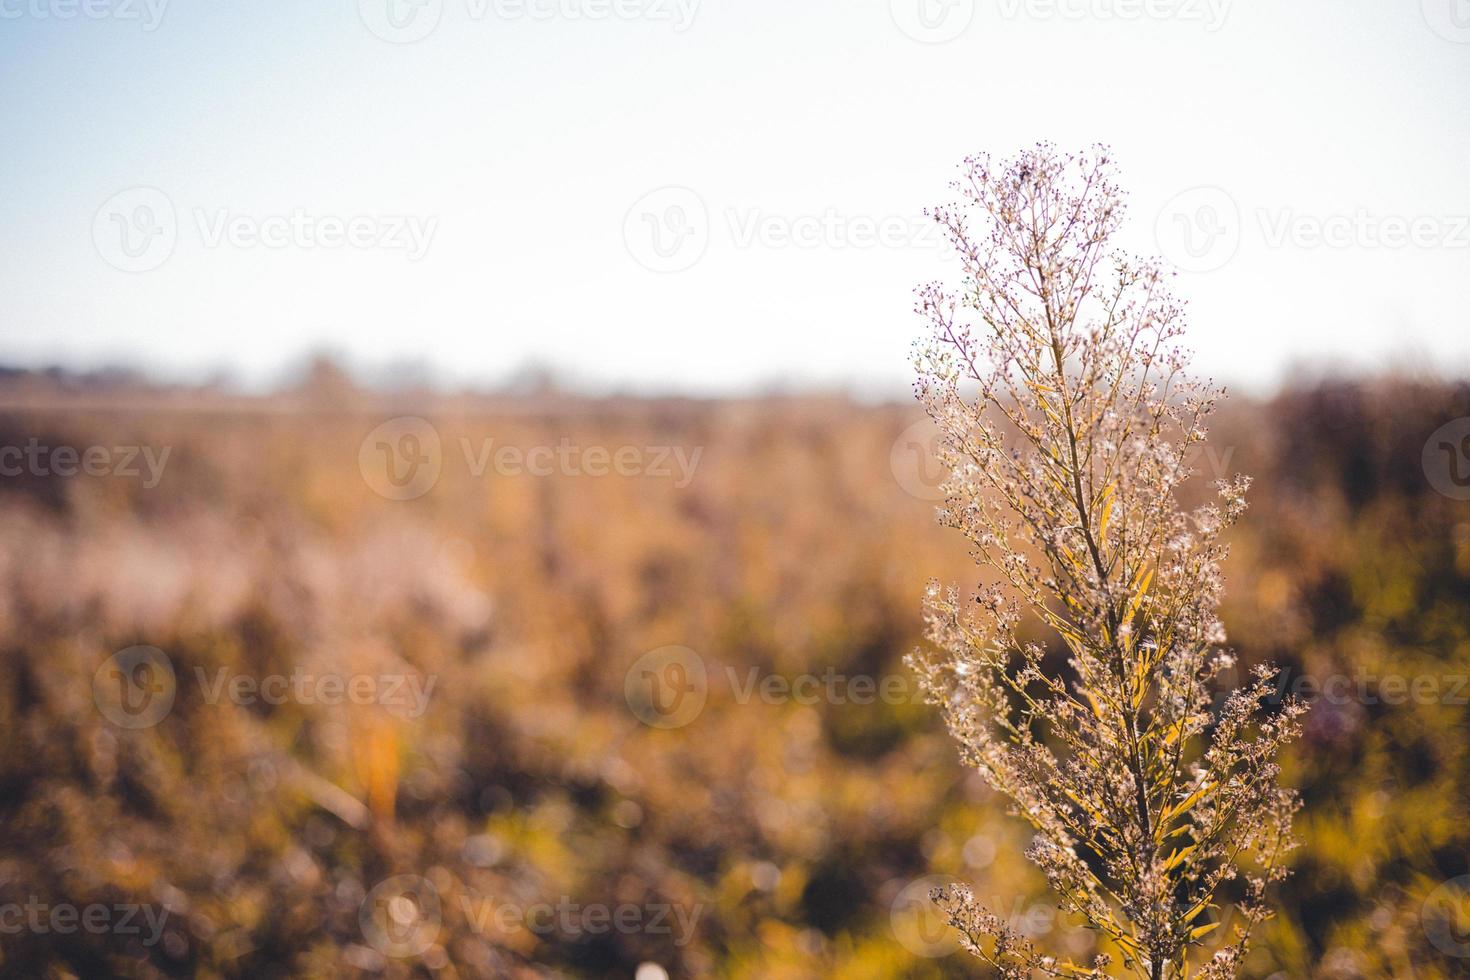 planta seca com sementes presas às pontas que se elevam sobre as gramíneas amareladas da terra pantanosa. leito do rio visto no horizonte. foto